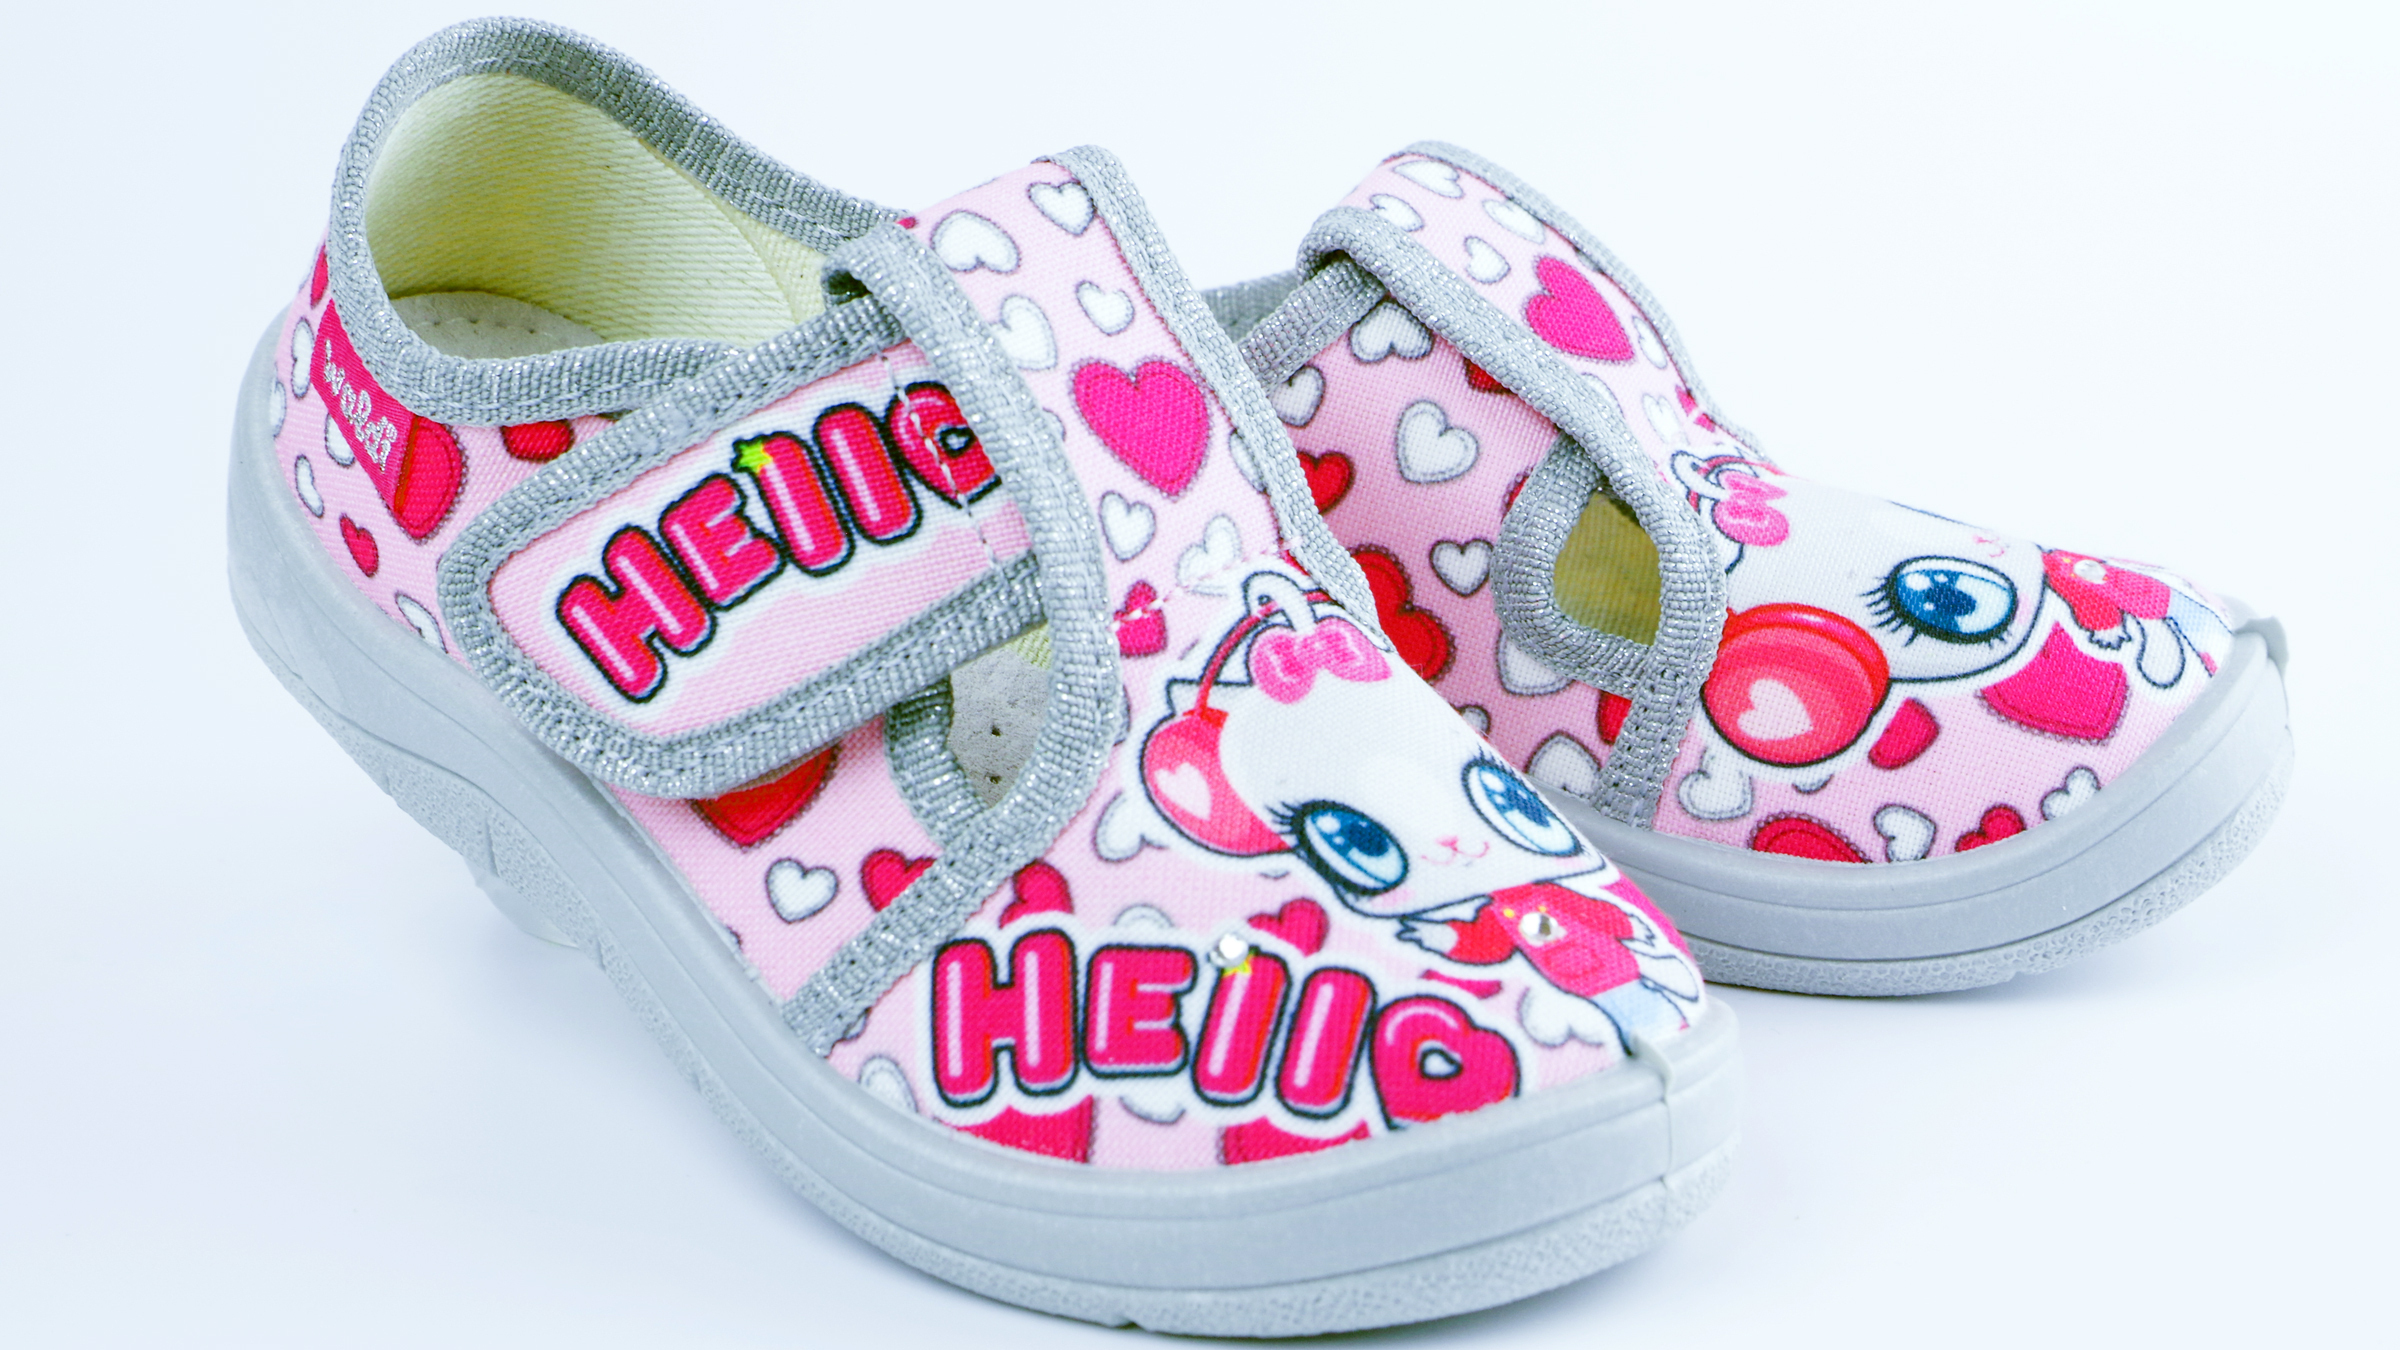 Текстильная обувь для девочек Тапочки Галя Hello (2127) цвет Розовый 24-30 размеры – Sole Kids. Фото 4